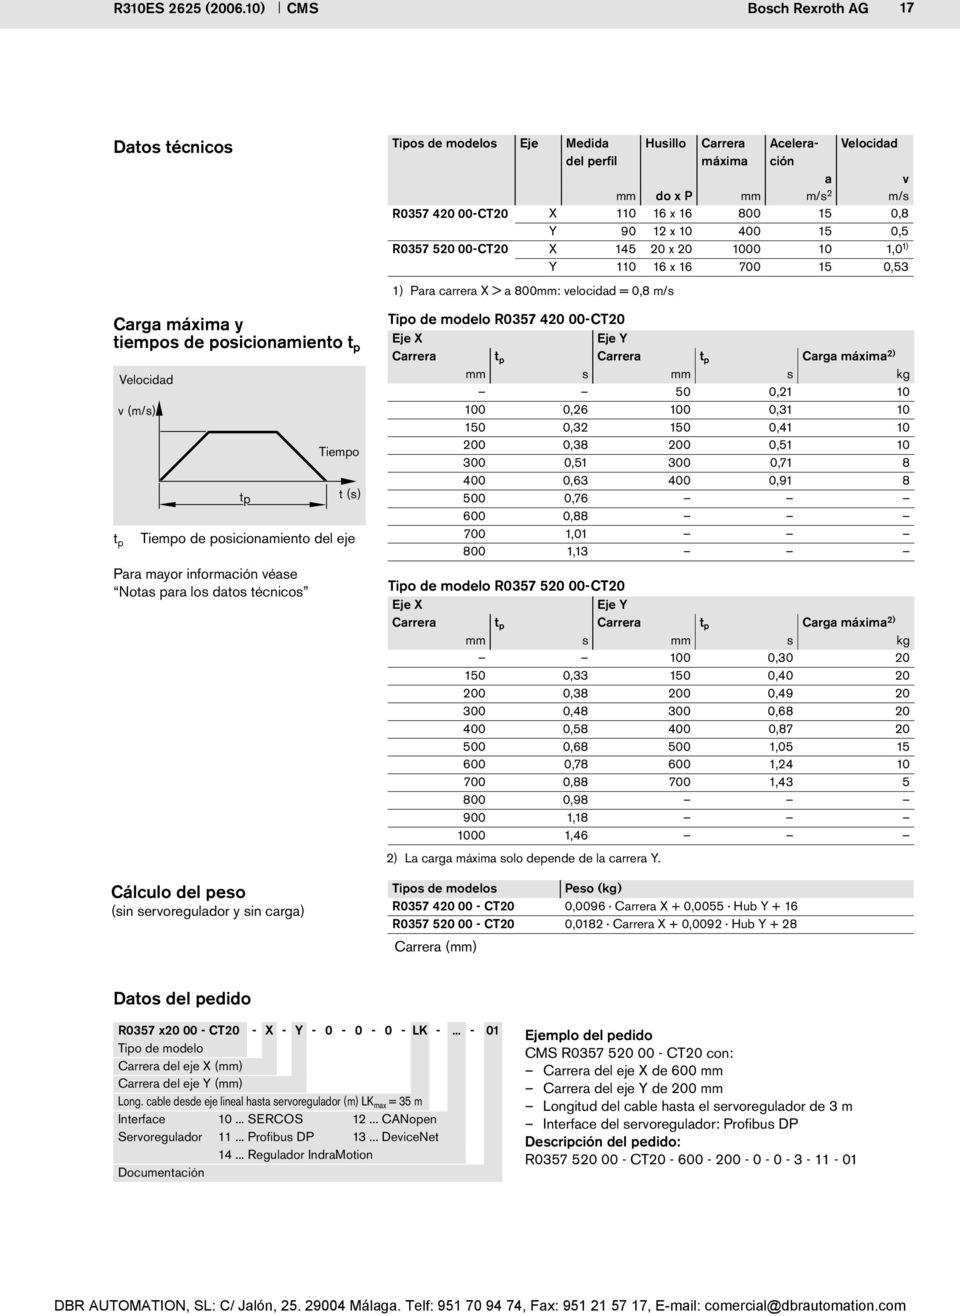 técnicos Cálculo del peso (sin servoregulador y sin carga) Tipos de modelos Eje Medida del perfil Husillo Carrera máxima Aceleración Velocidad a v mm do x P mm m/s 2 m/s R0357 420 00-CT20 X 110 16 x